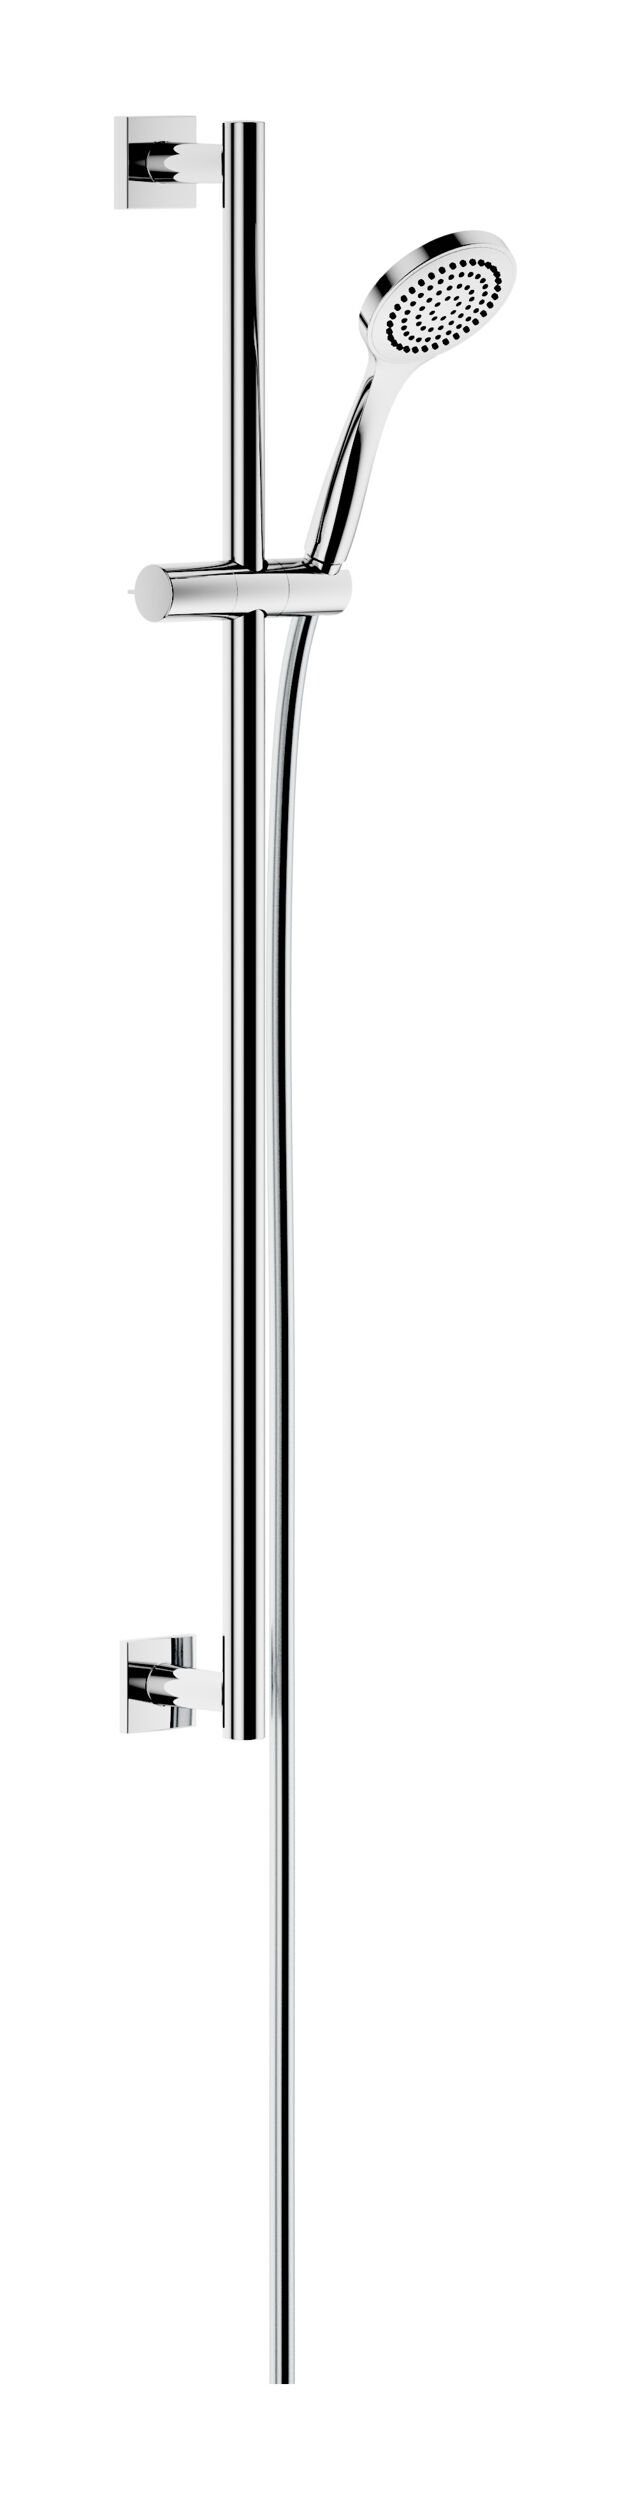 Keuco Brausegarnitur IXMO, Höhe 85.5 cm, 1 Strahlart(en), Brause-Set Rosette eckig - Verchromt